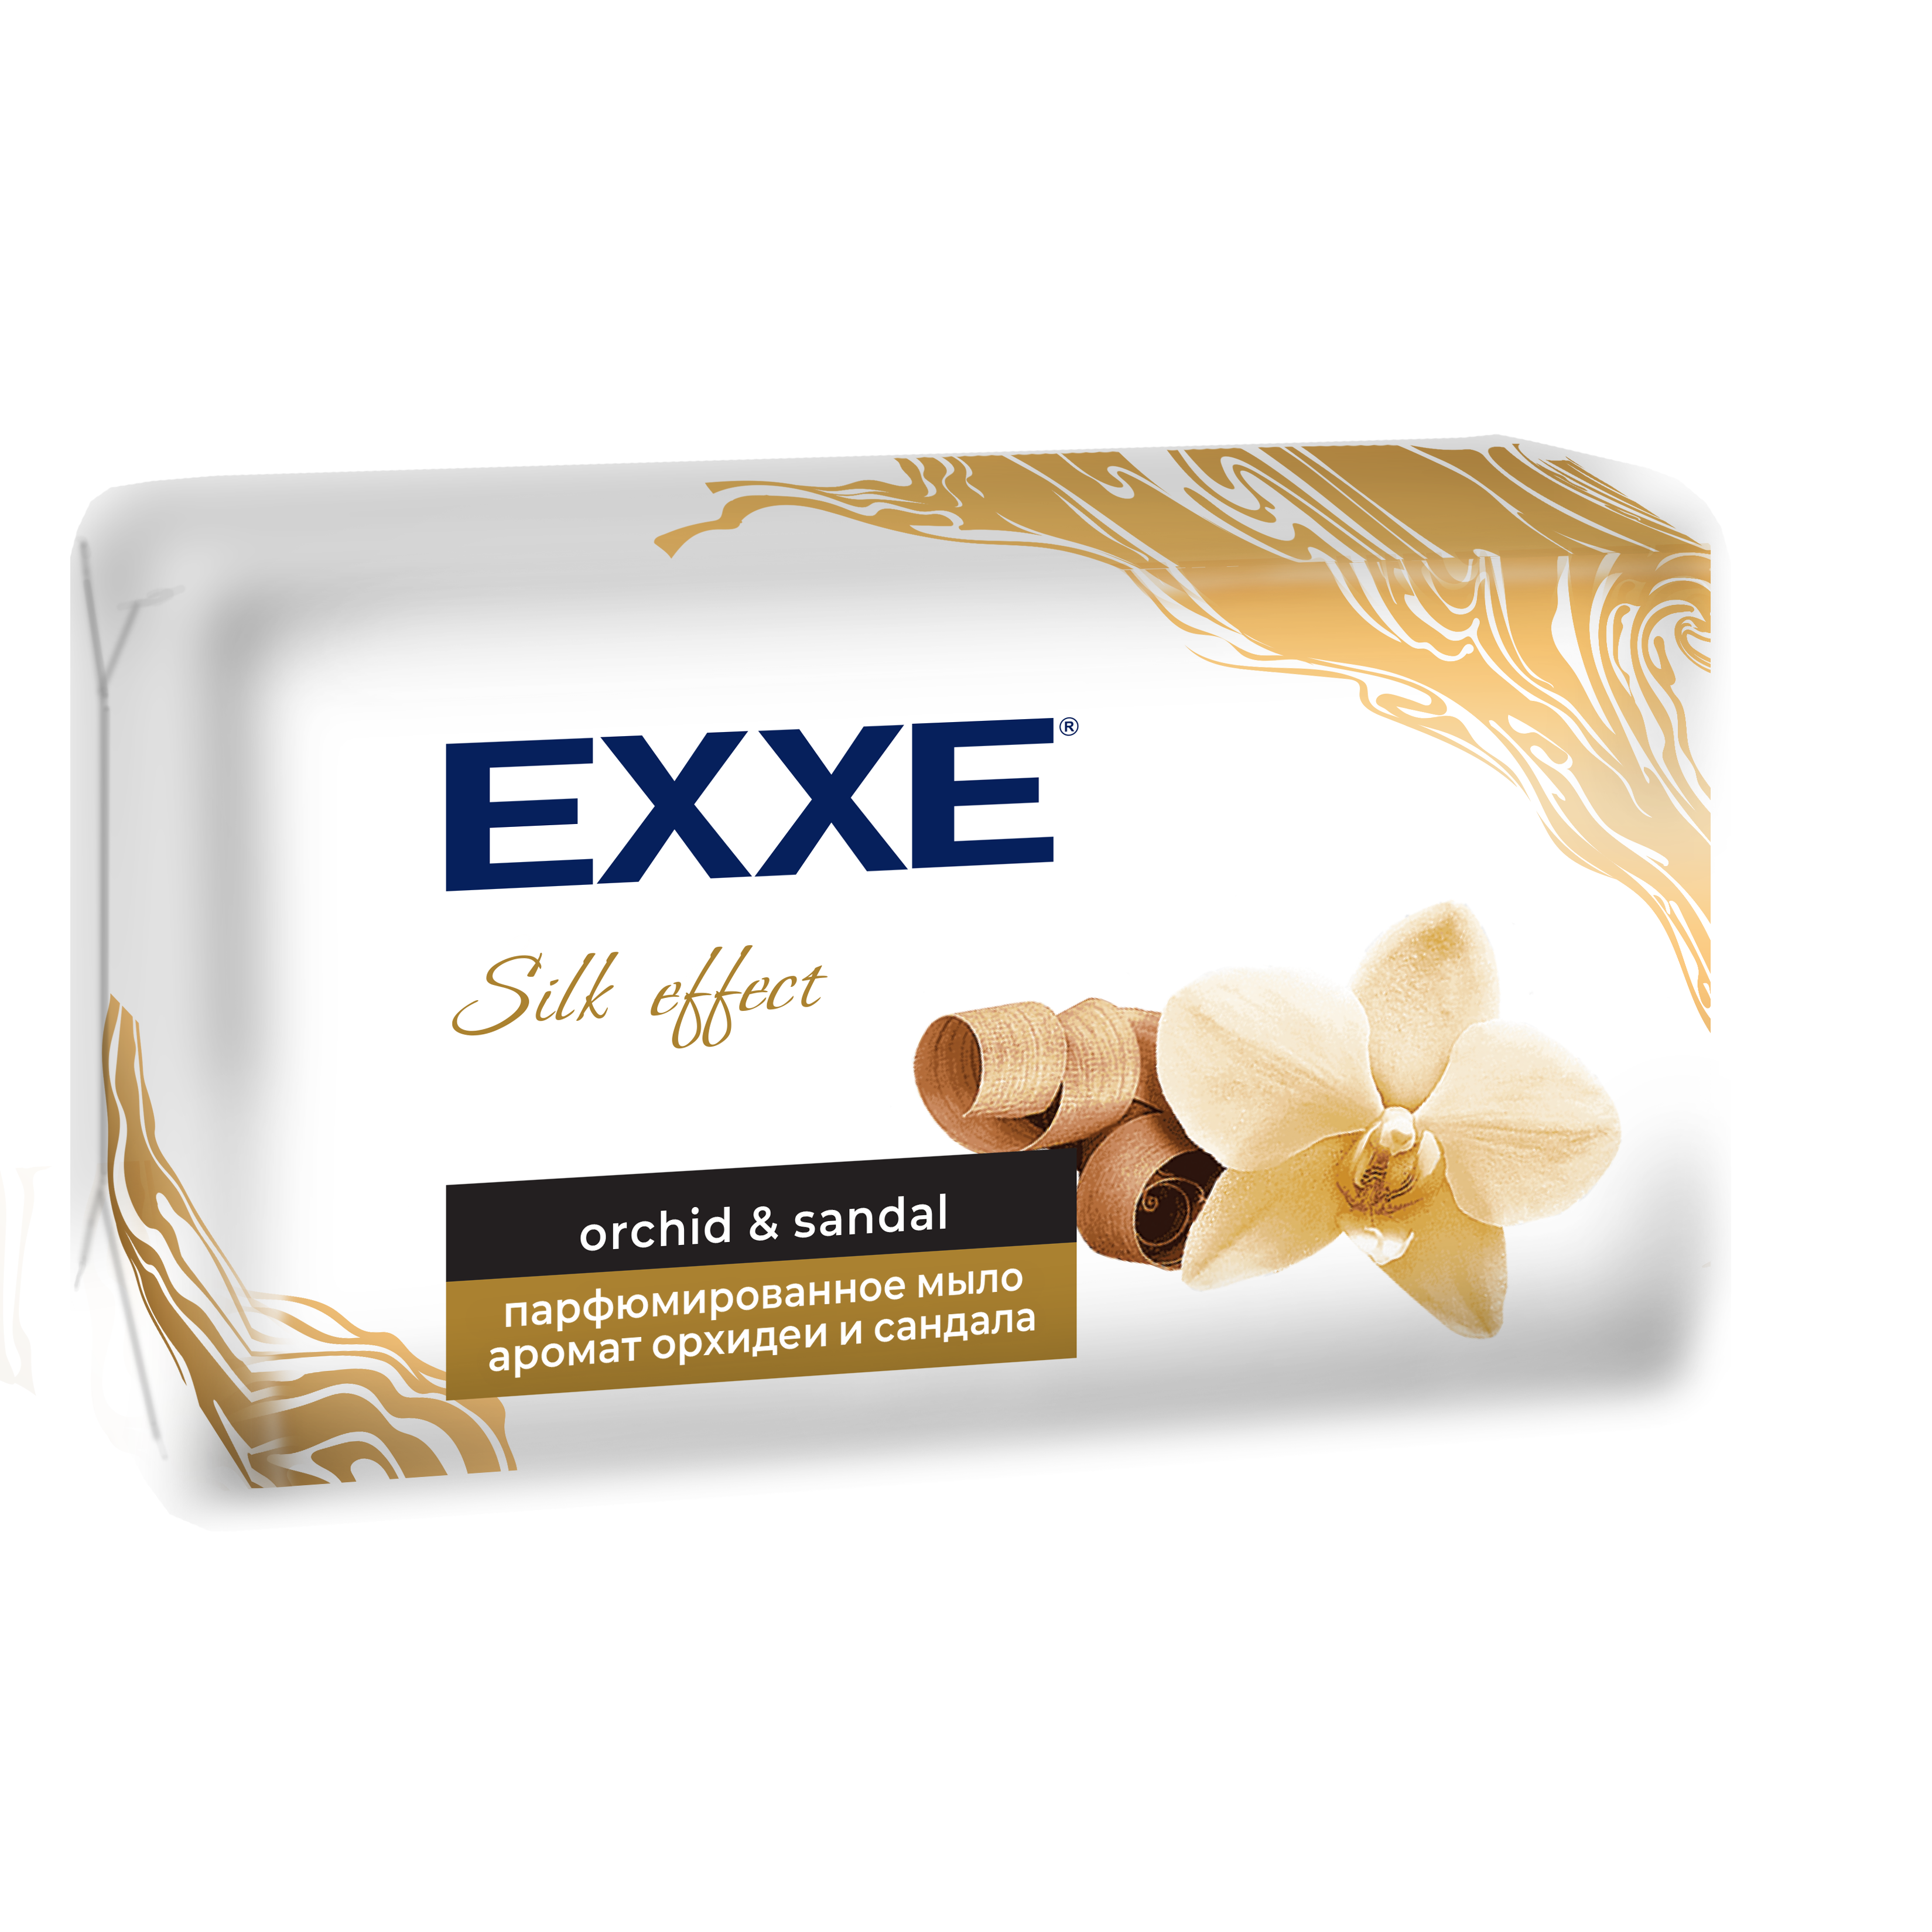 Мыло парфюмированное EXXE Silk Effect аромат Орхидеи и Сандала, 140 г collistar румяна silk effect maxi blusher